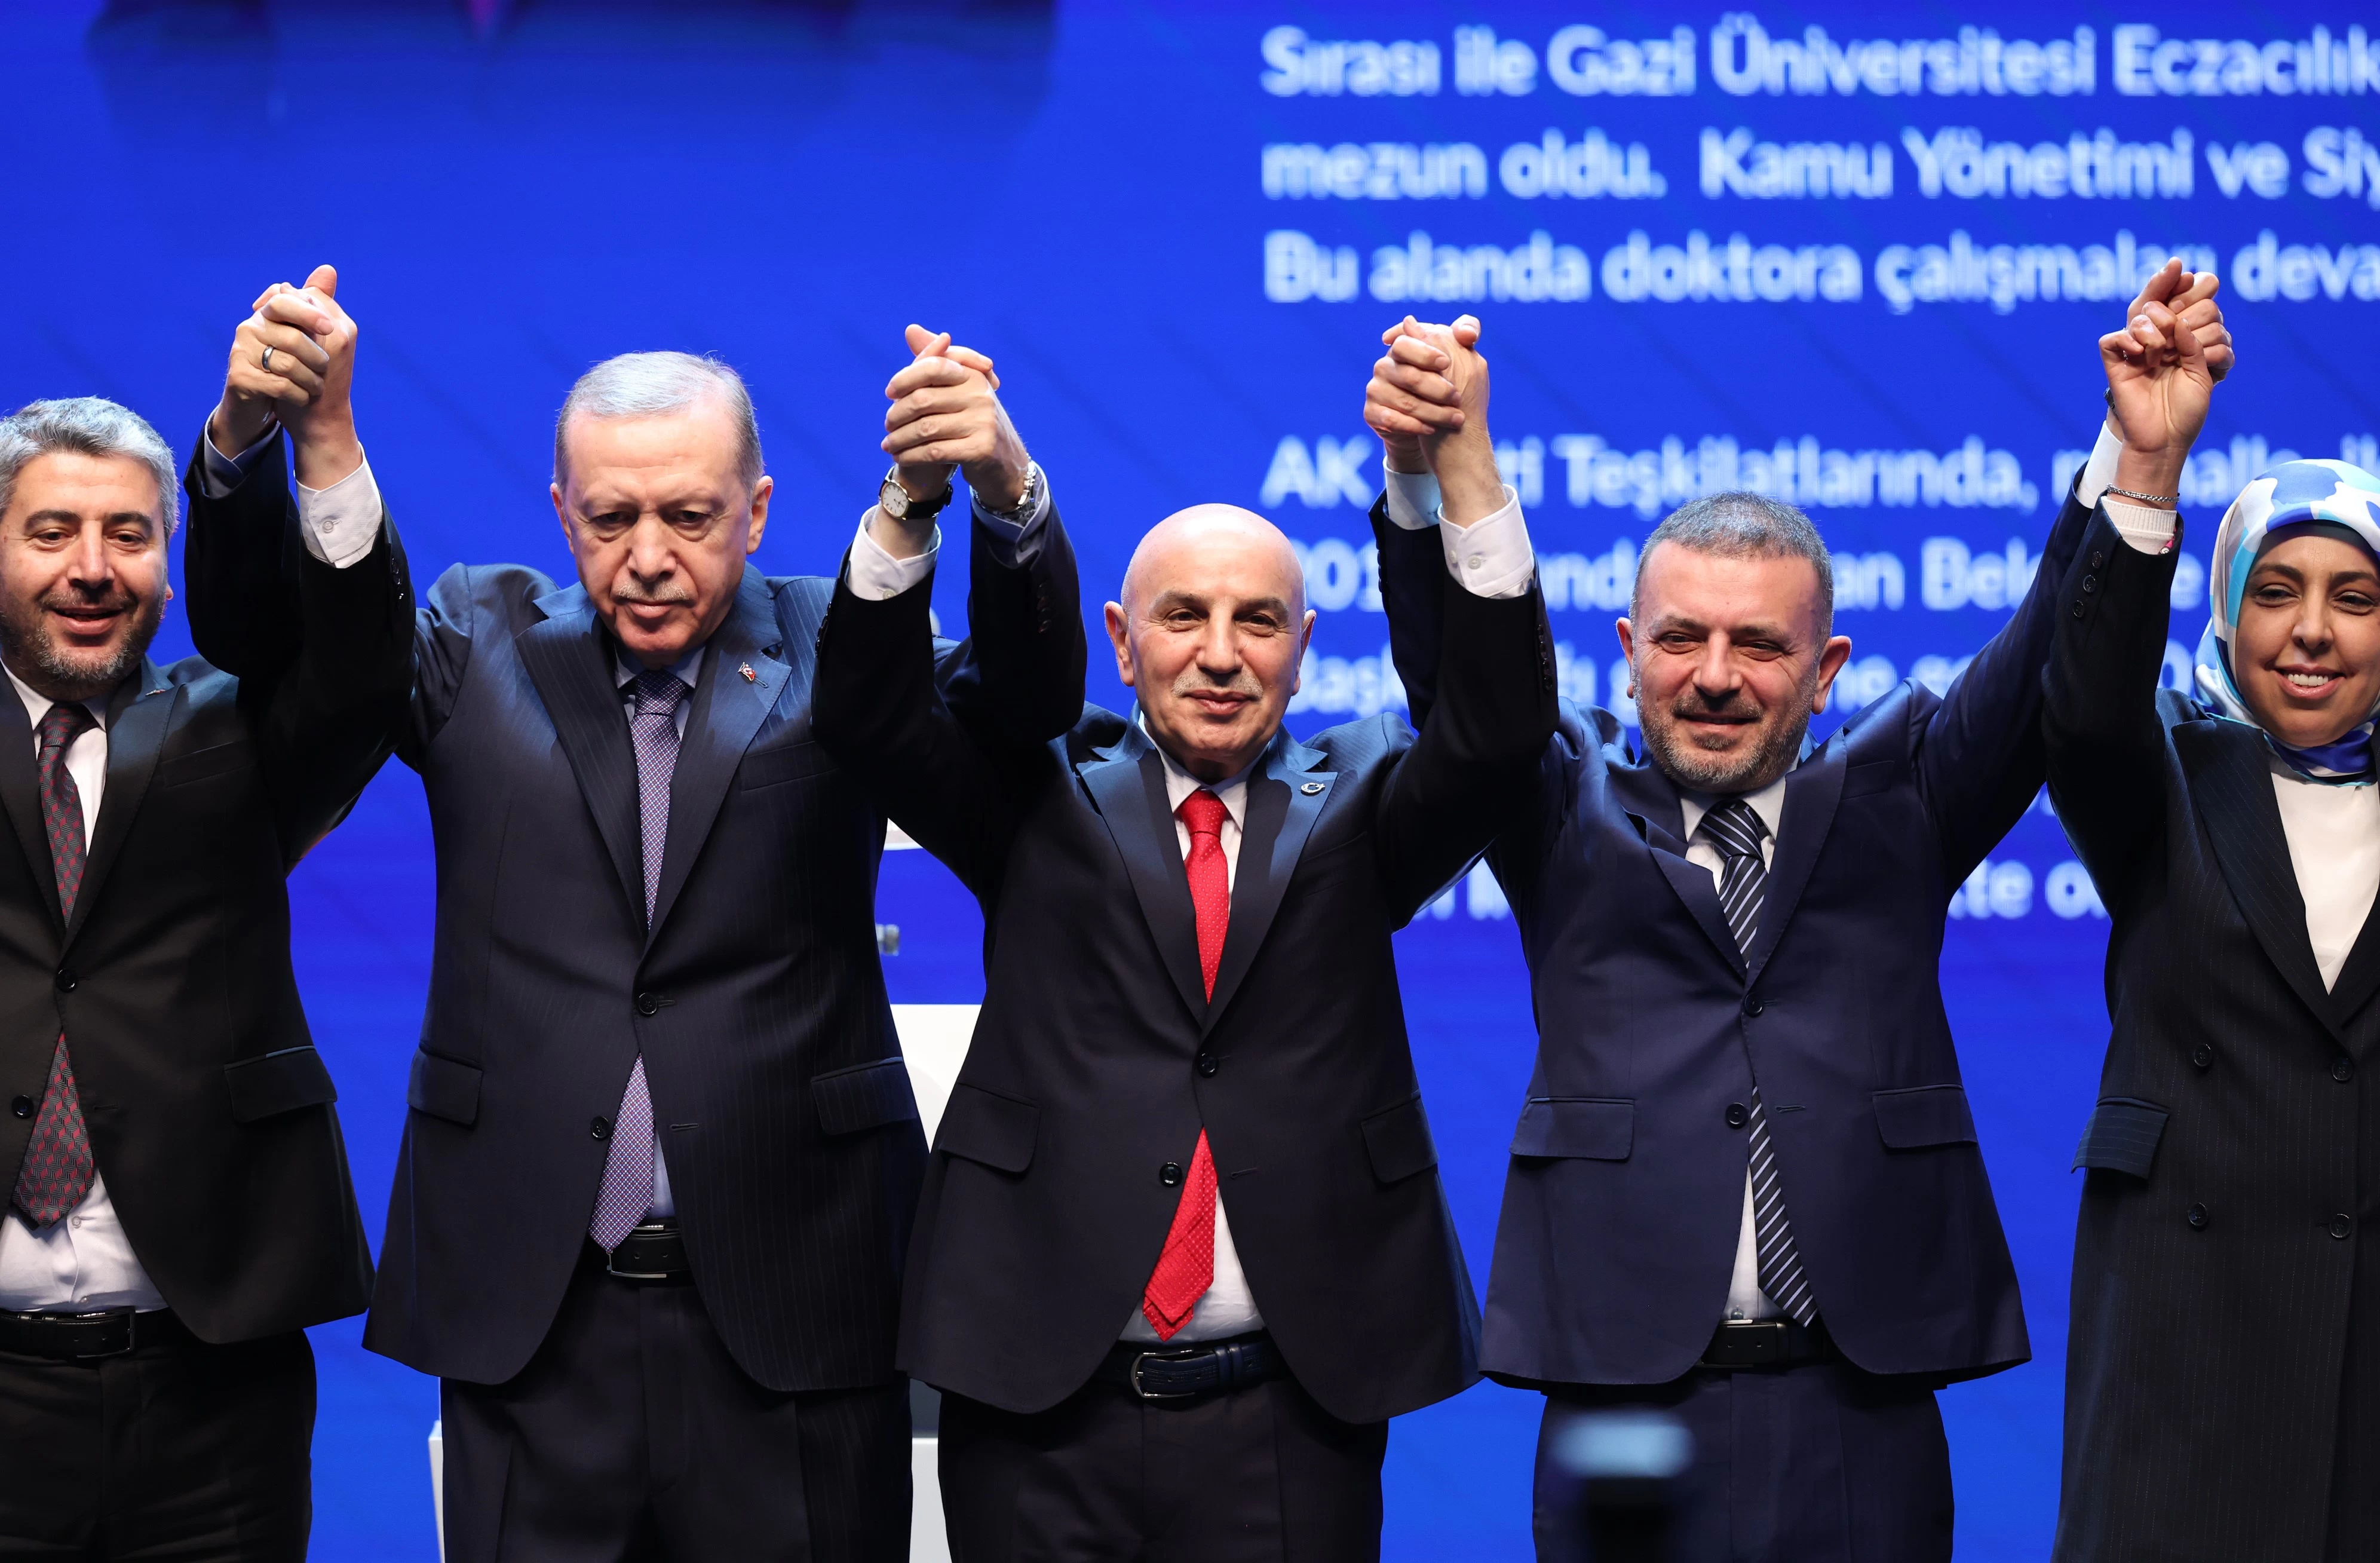 AK Parti Sincan Belediye Başkan adayı Ercan'dan ilk açıklama! Söz veriyoruz